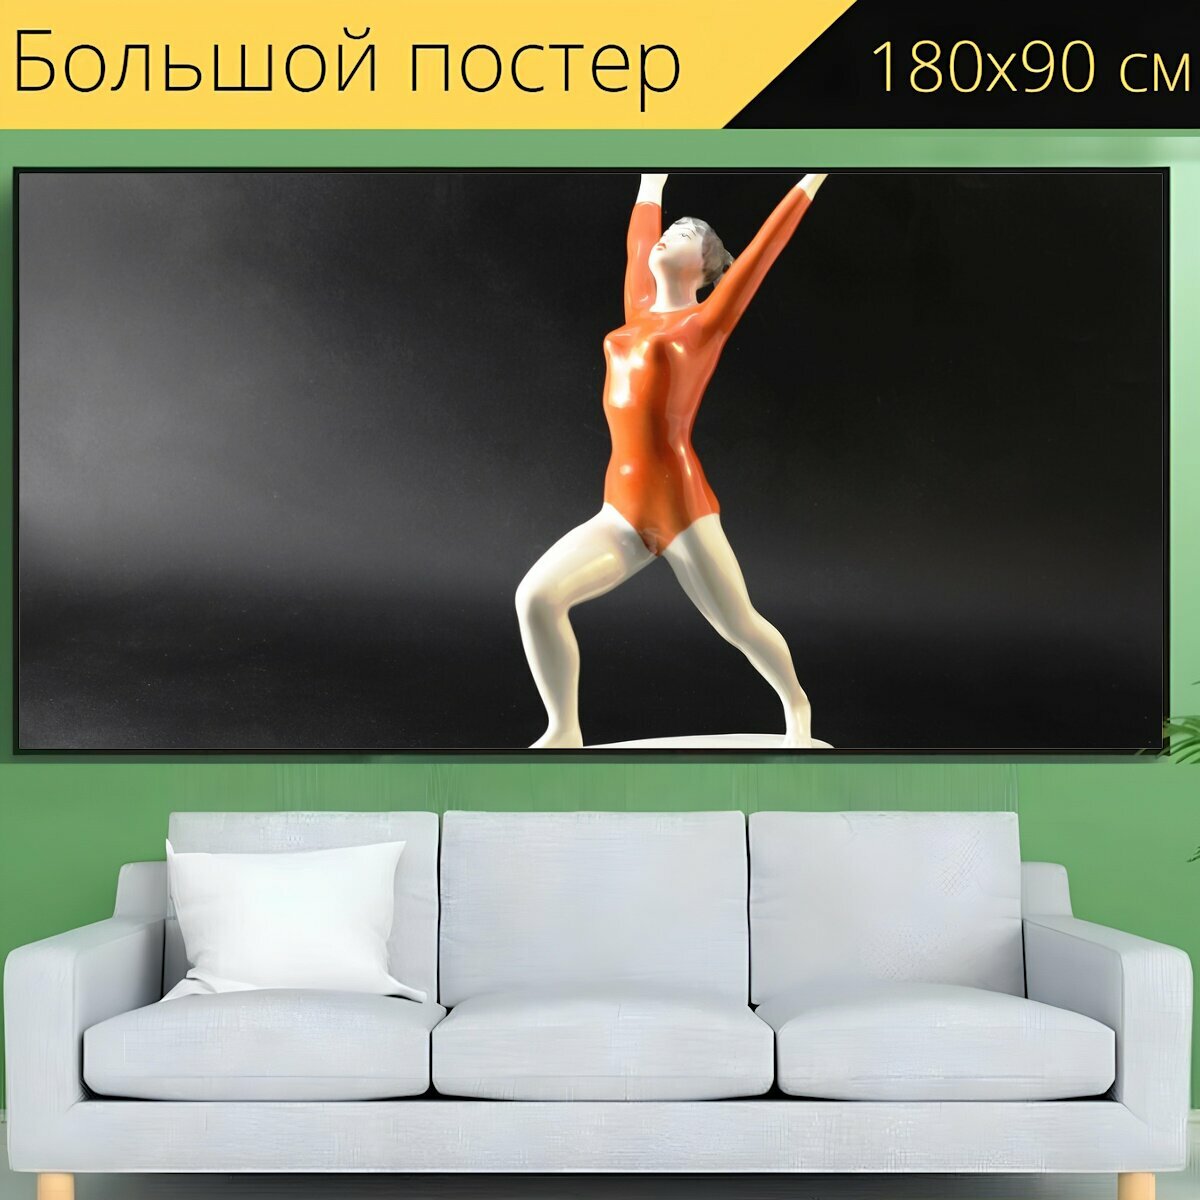 Большой постер "Гимнастка, балерина, прожектор" 180 x 90 см. для интерьера